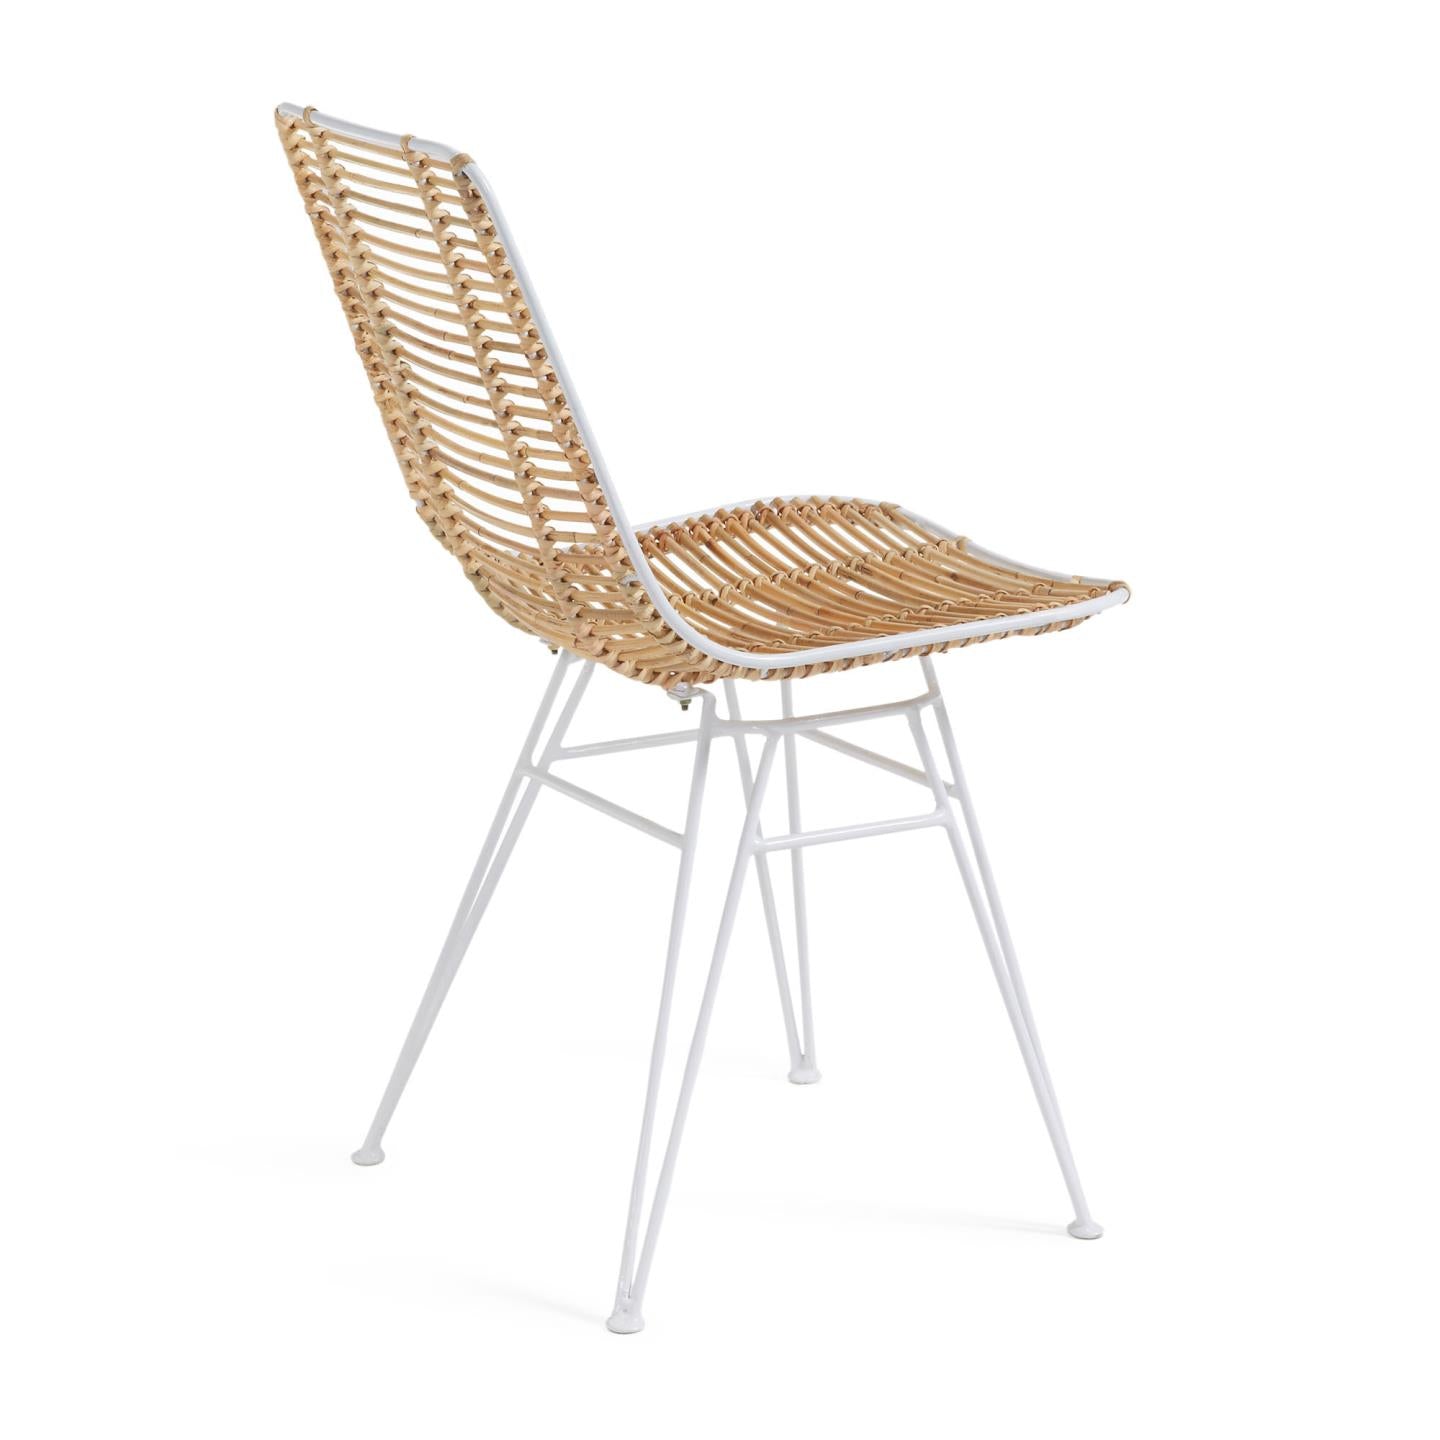 Tishana chair rattan and white steel finish